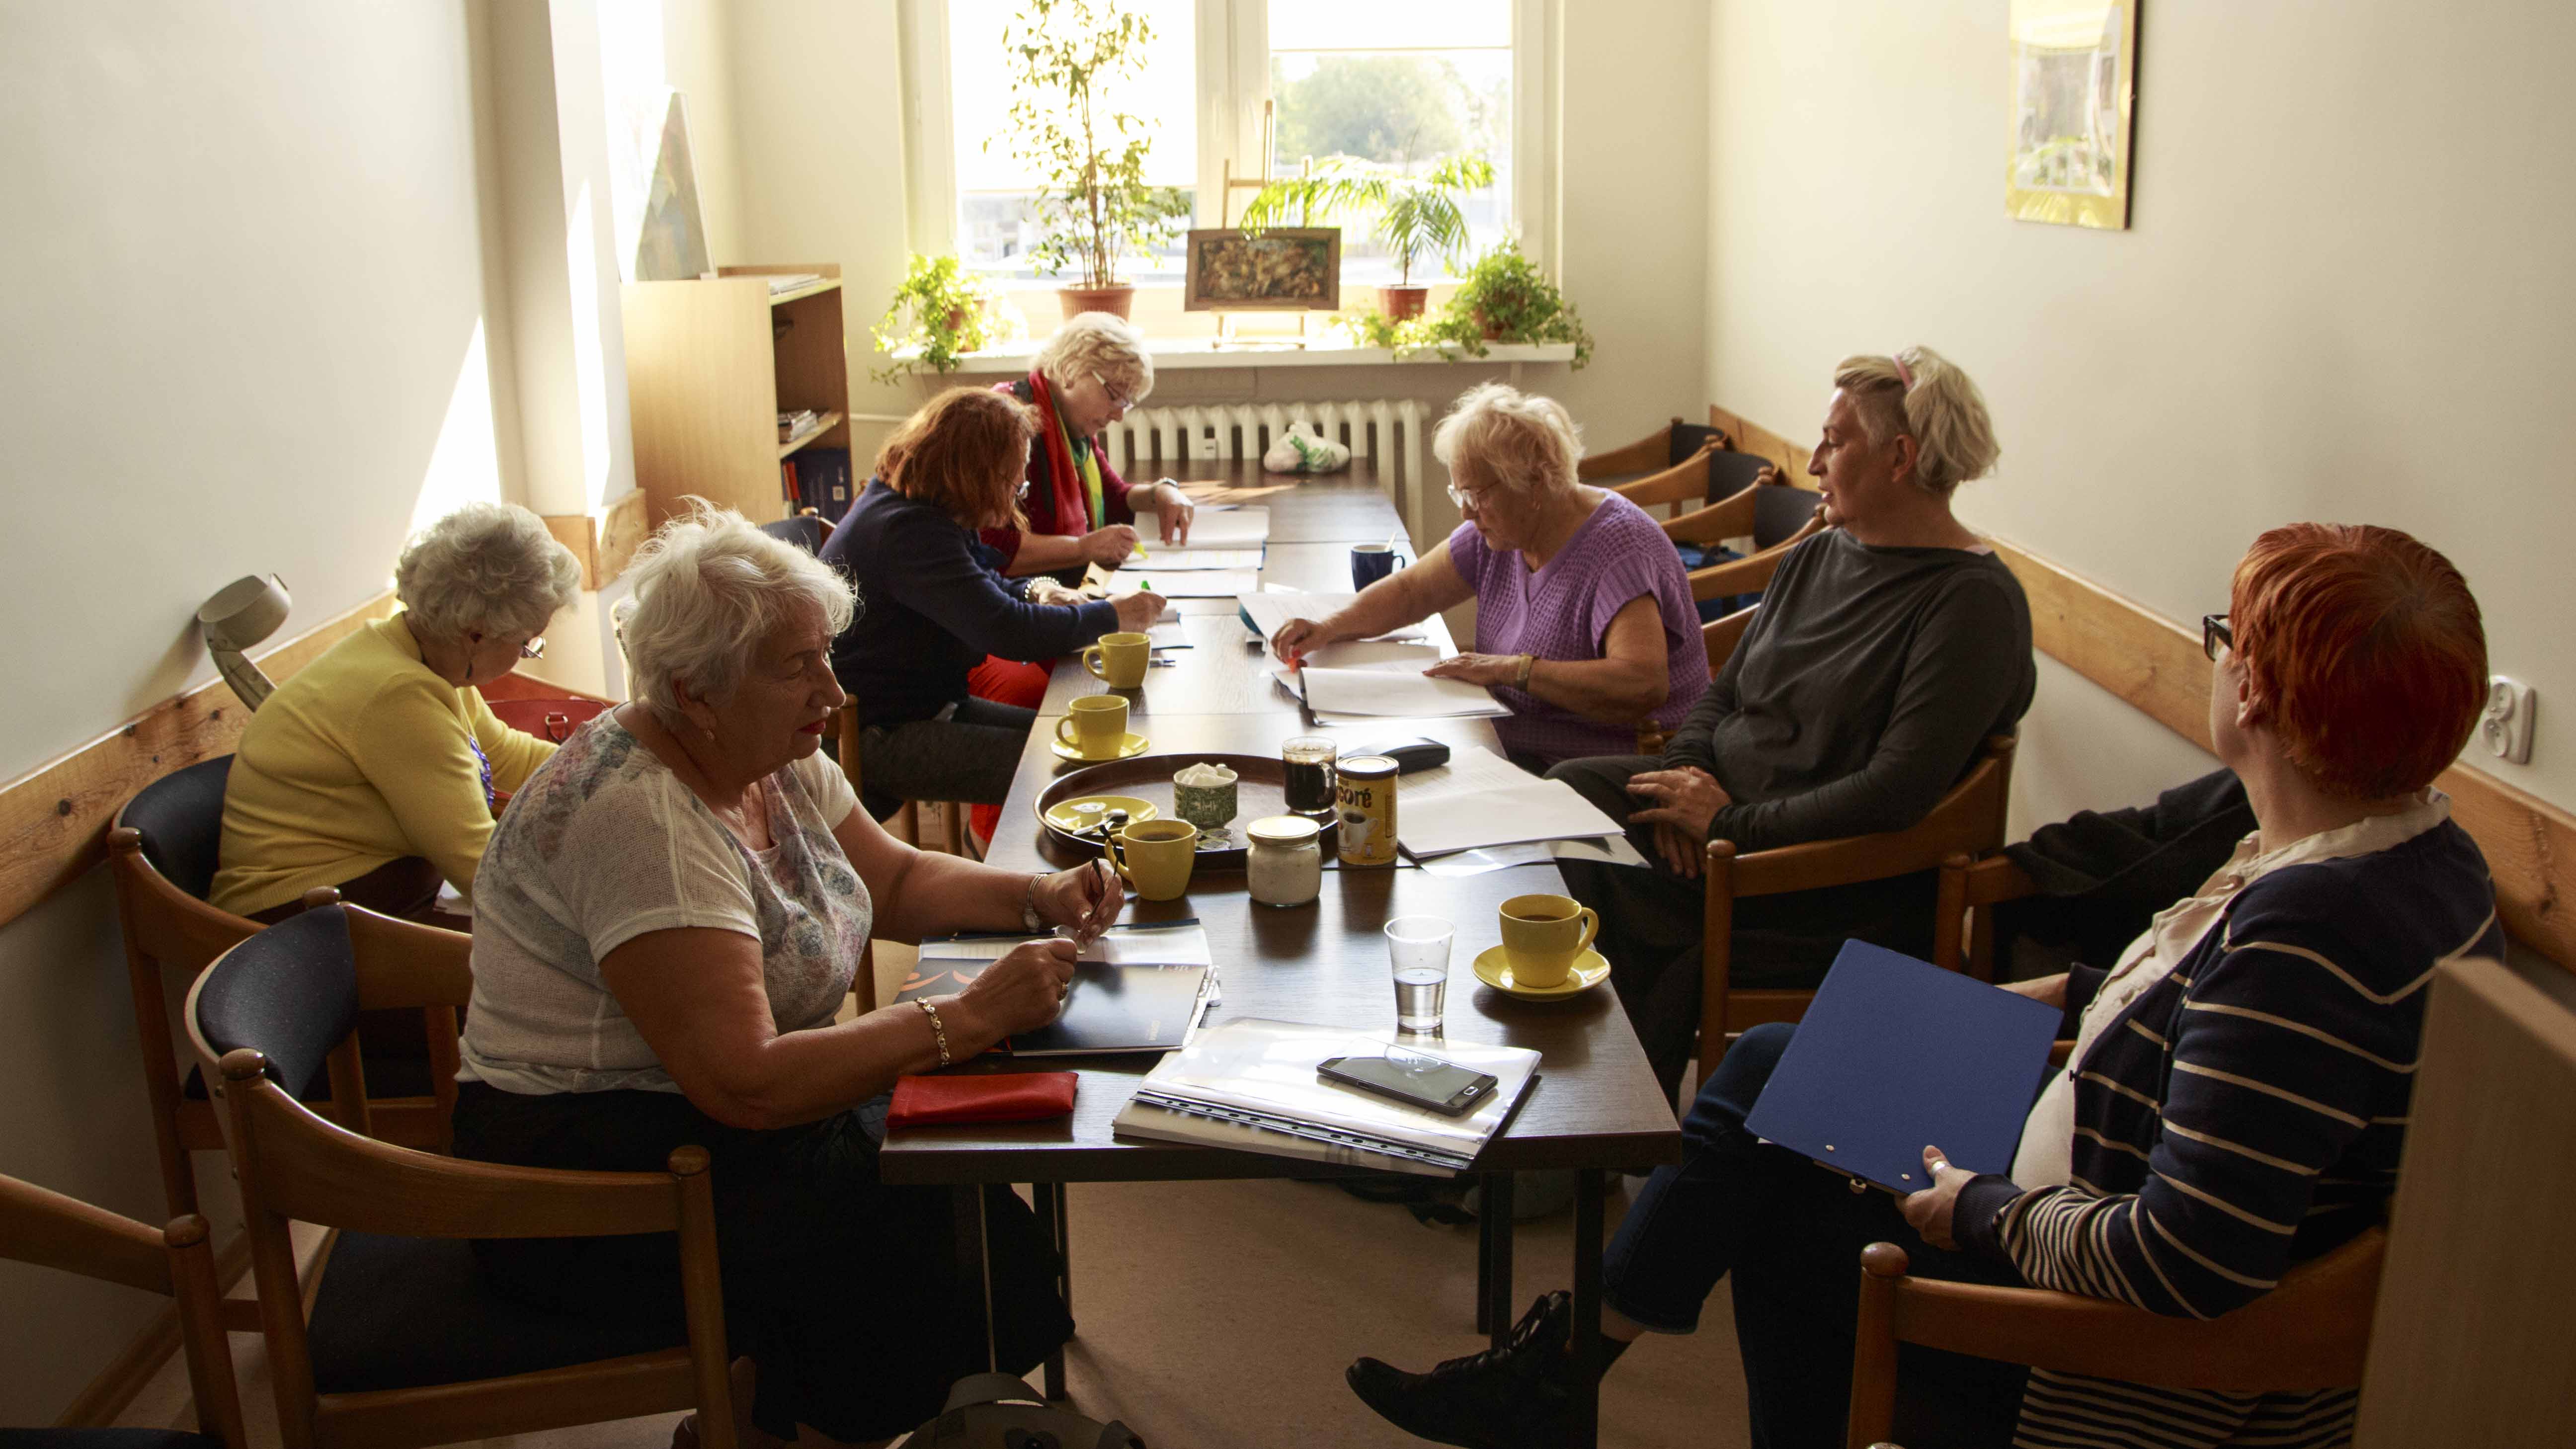 Zdjęcie z projektu Chór dzielnicowy. Kilka starszych kobiet przy stole podczas próby, pochylonych nad scenariuszami.